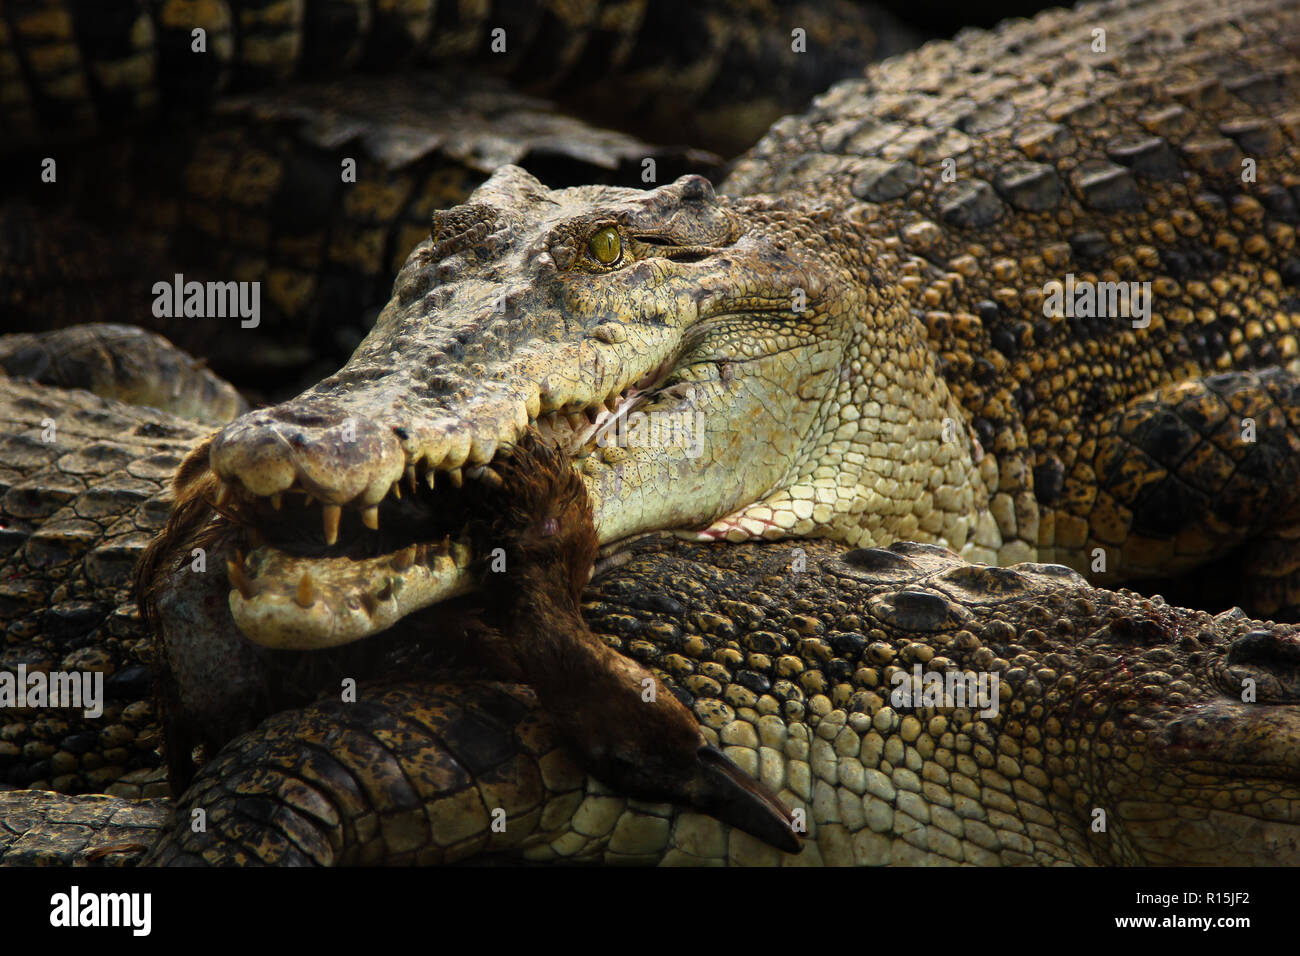 Crocodile eating duck Stock Photo - Alamy